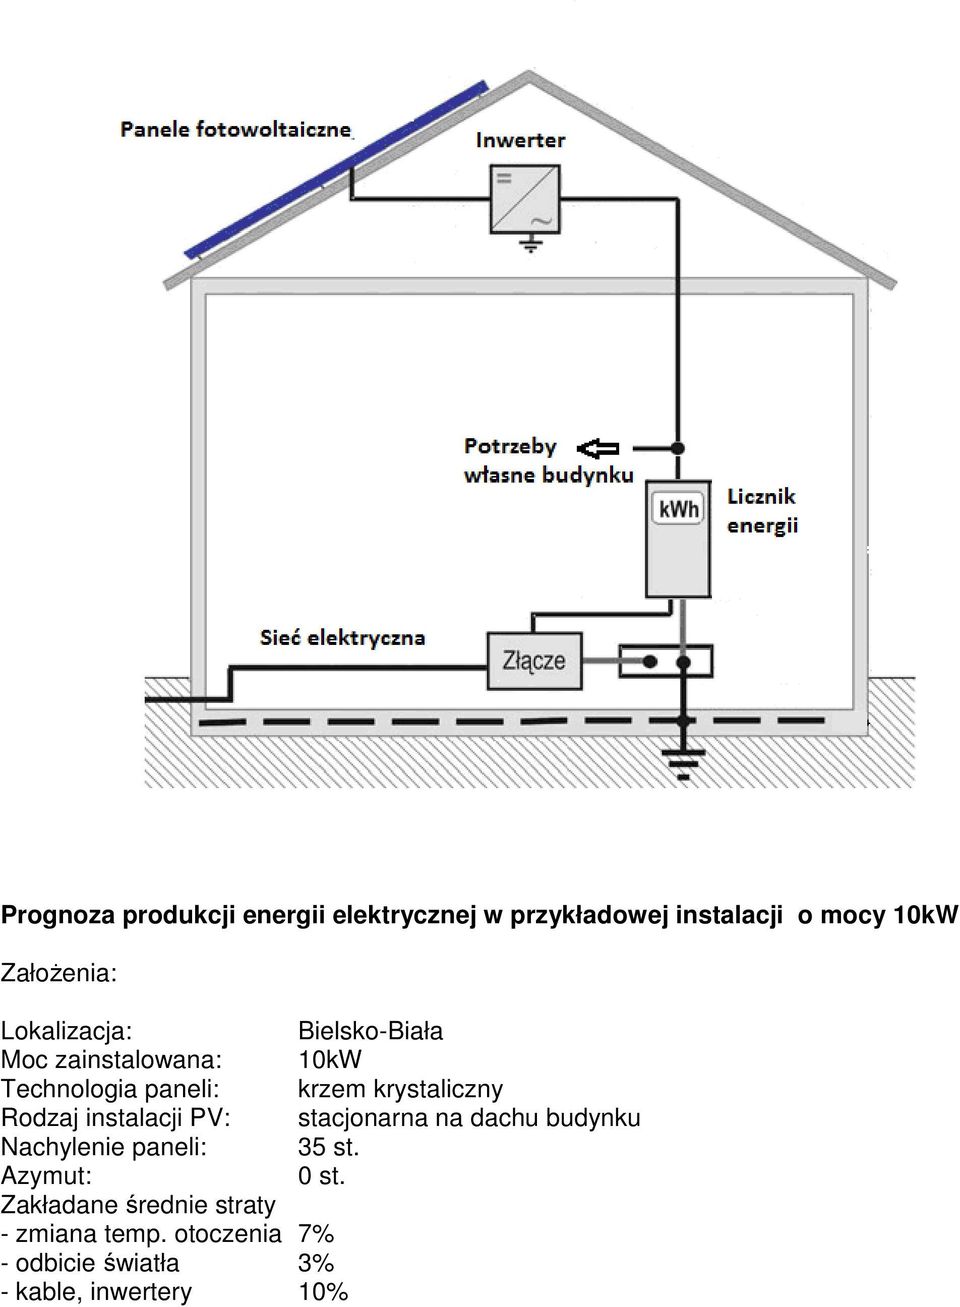 Rodzaj instalacji PV: stacjonarna na dachu budynku Nachylenie paneli: 35 st. Azymut: 0 st.